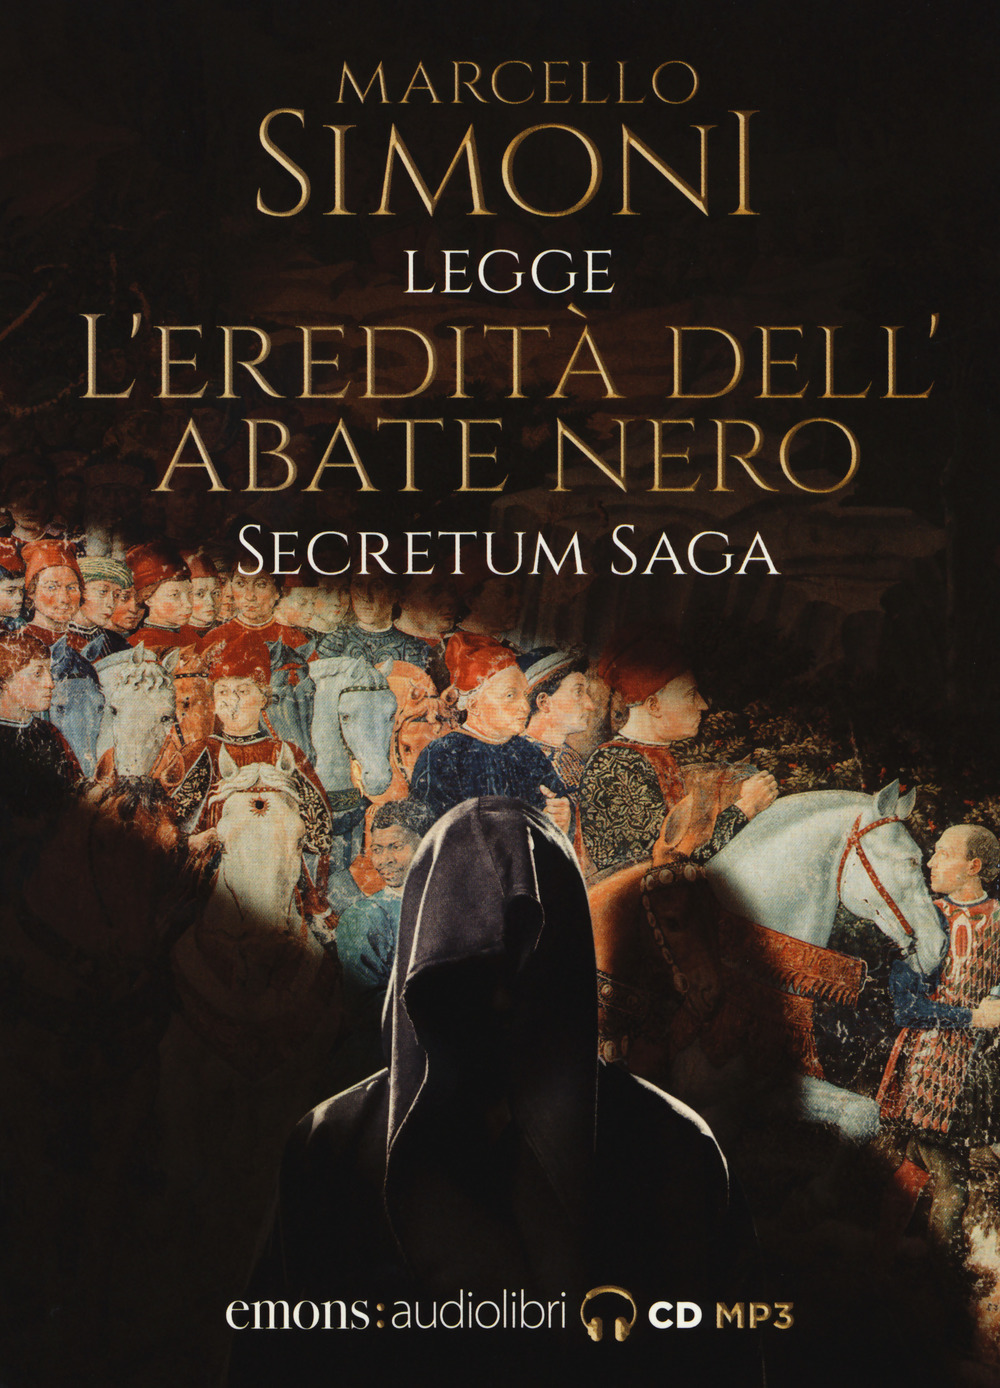 L'eredità dell'abate nero. Secretum saga. Letto da Simoni Marcello letto da Marcello Simoni. Audiolibro. CD Audio formato MP3